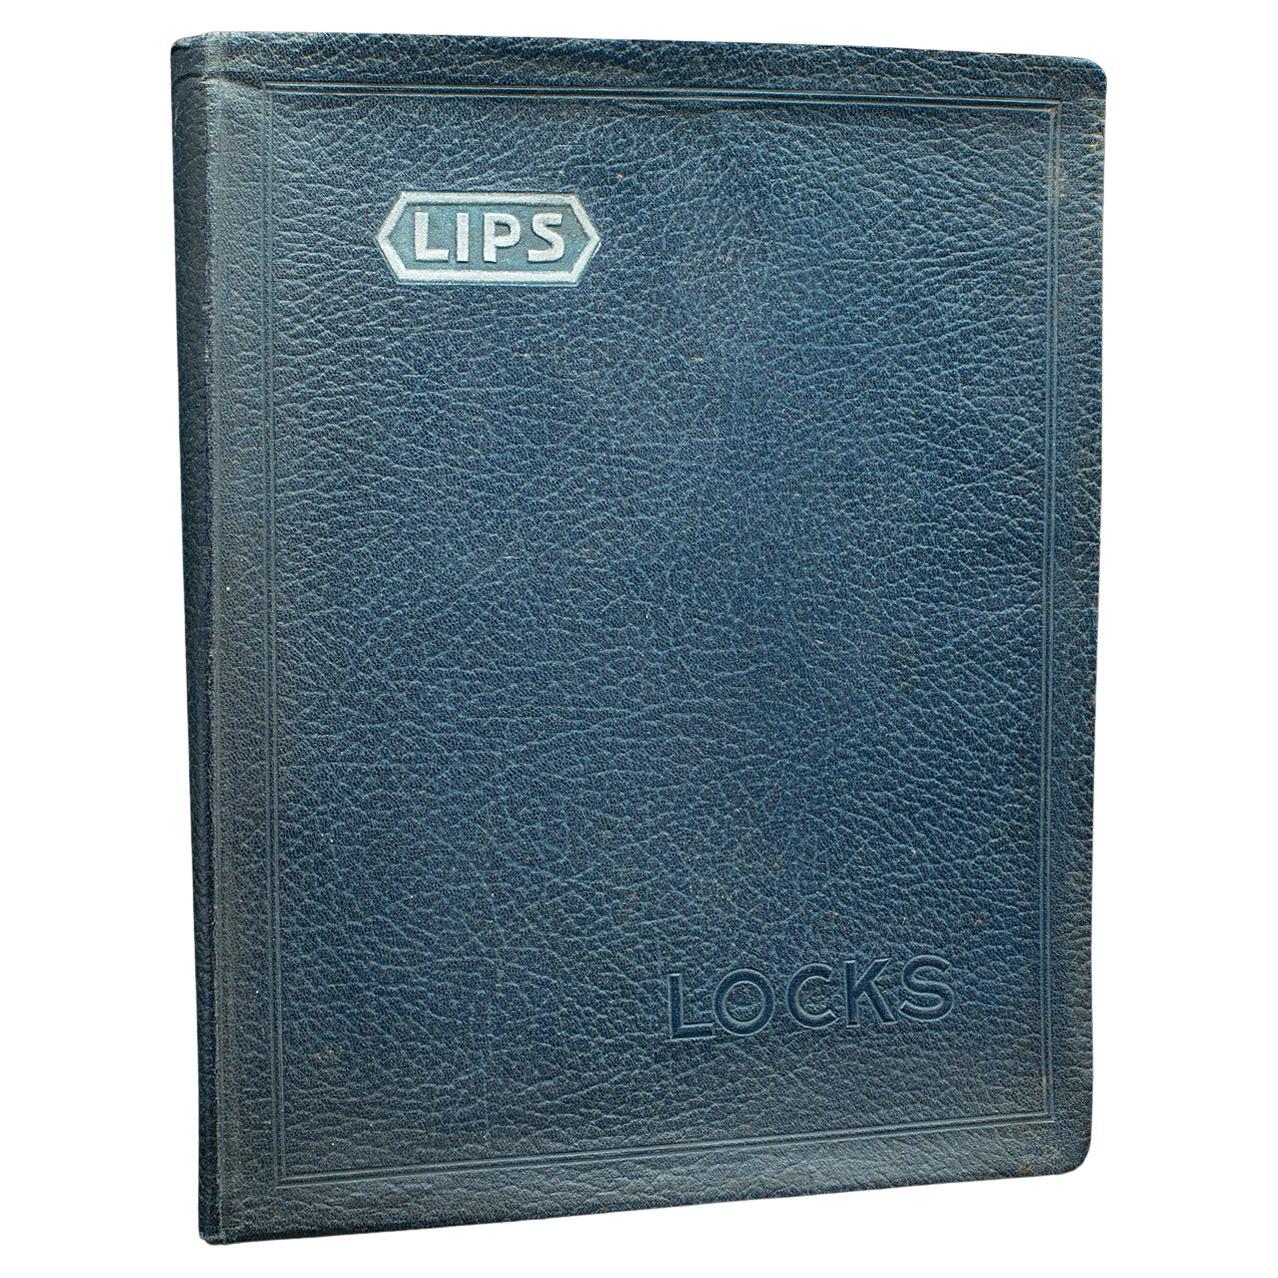 Trade Catalogue Vintage Lips Locks, englisch, Folio, Nicholls and Clarke, um 1935 im Angebot